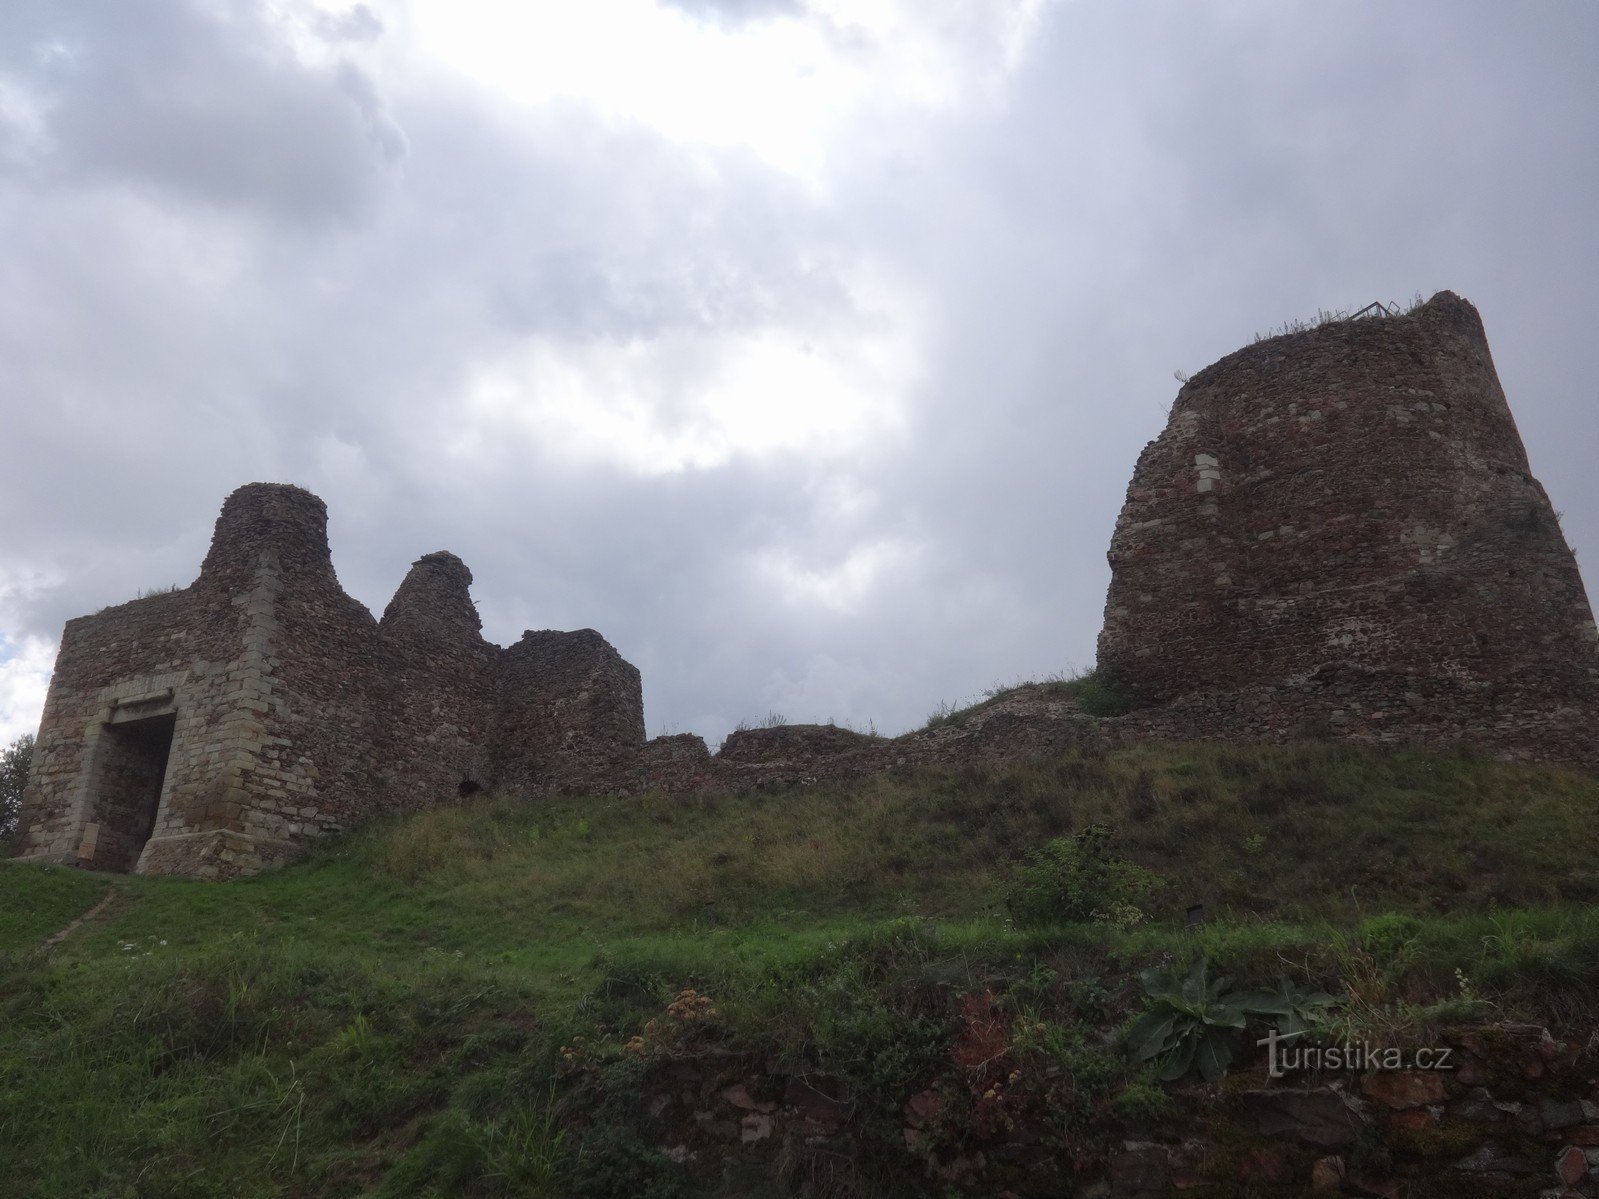 Le rovine del castello di Lichnice nelle montagne di ferro